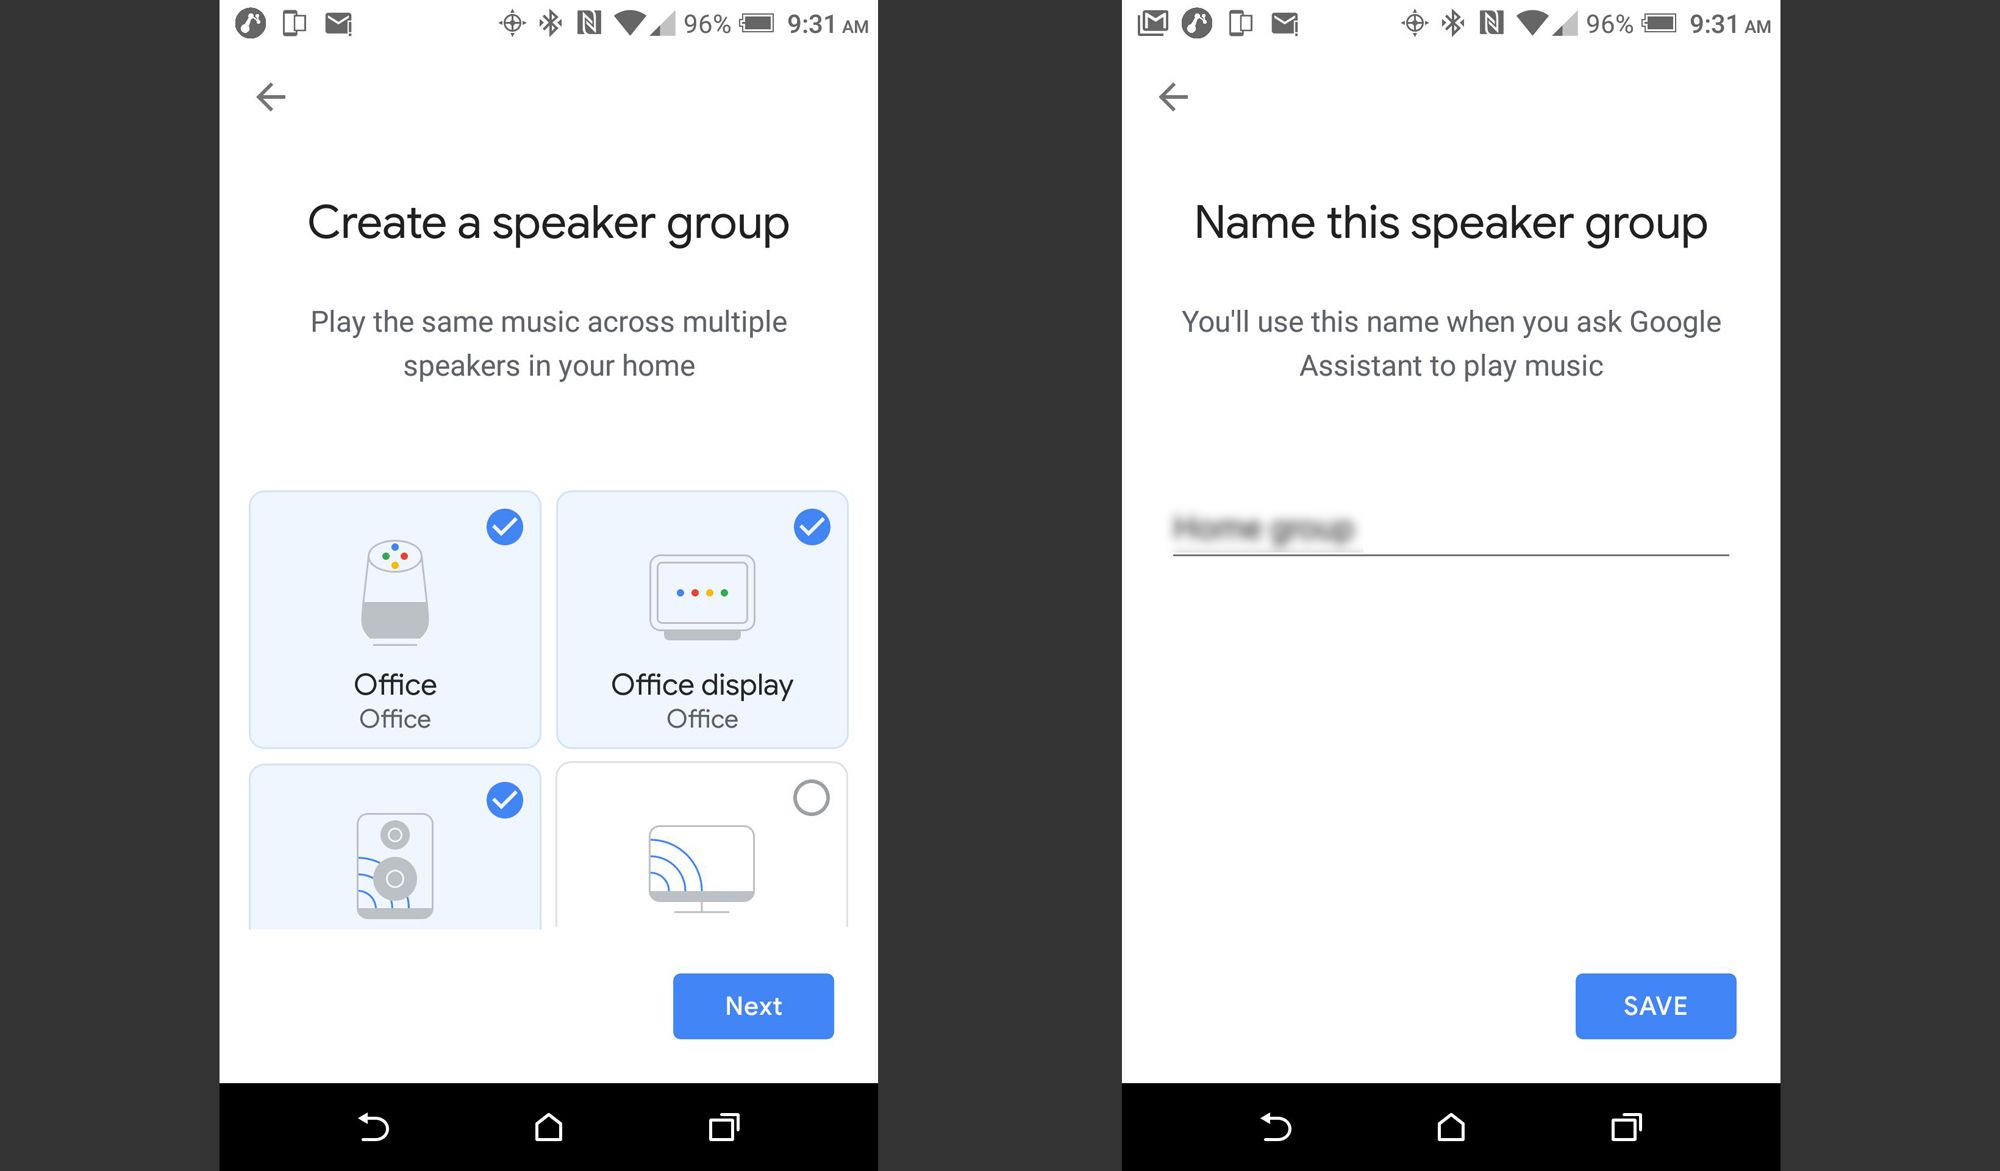 Google Home - Selecionar alto-falantes para o grupo / nome do grupo